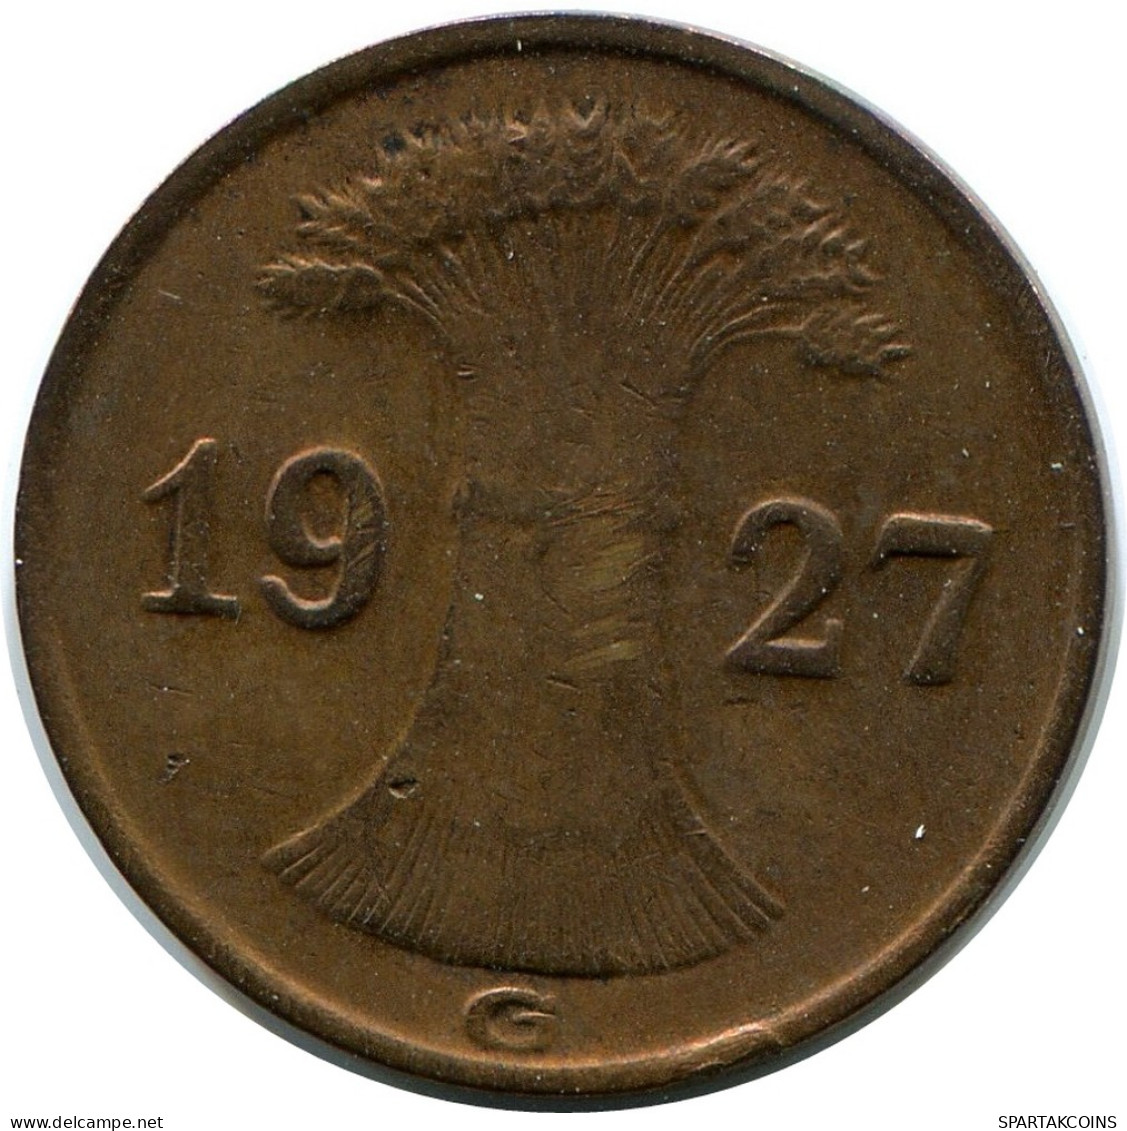 1 REICHSPFENNIG 1927 G GERMANY Coin #DB779.U - 1 Rentenpfennig & 1 Reichspfennig